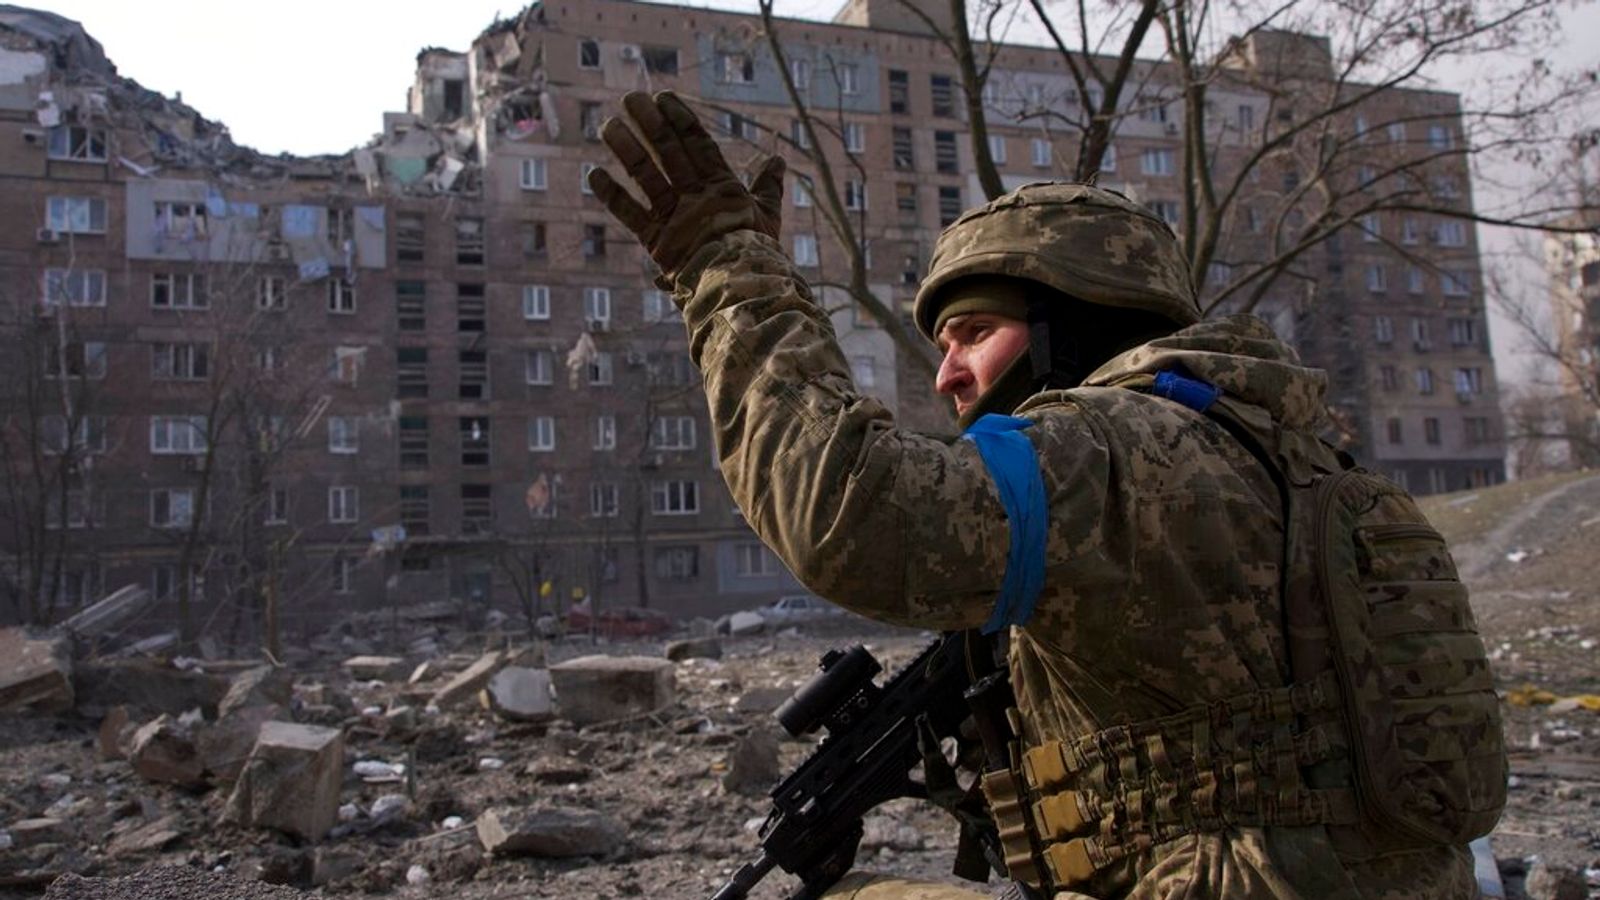 Guerre d’Ukraine : « L’acier a atteint son point de rupture » – Le maire de Marioupol déclare que les forces ukrainiennes sont « largement en infériorité numérique » mais continueront à se battre |  Nouvelles du monde